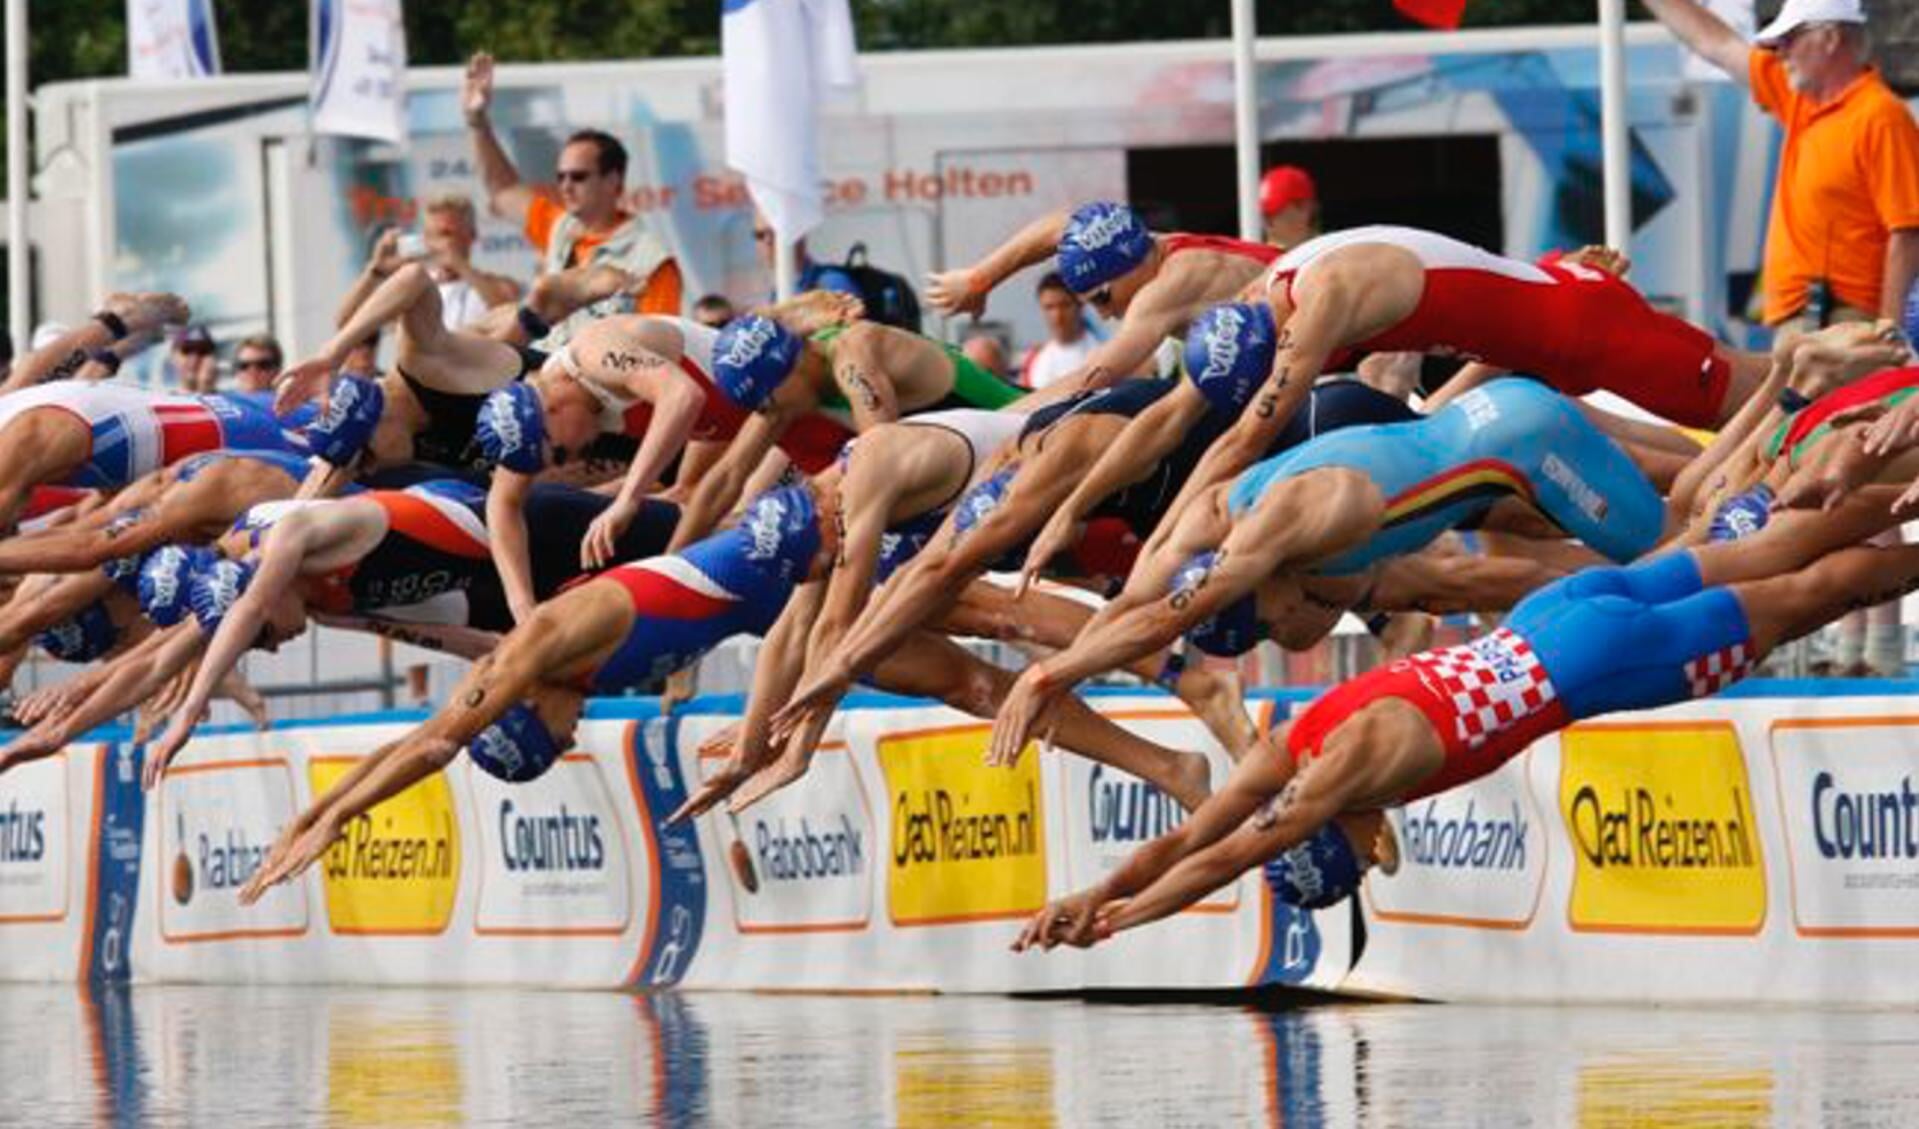 Zwemclub Twenhaarsveld geeft triathlonzwemtraining.